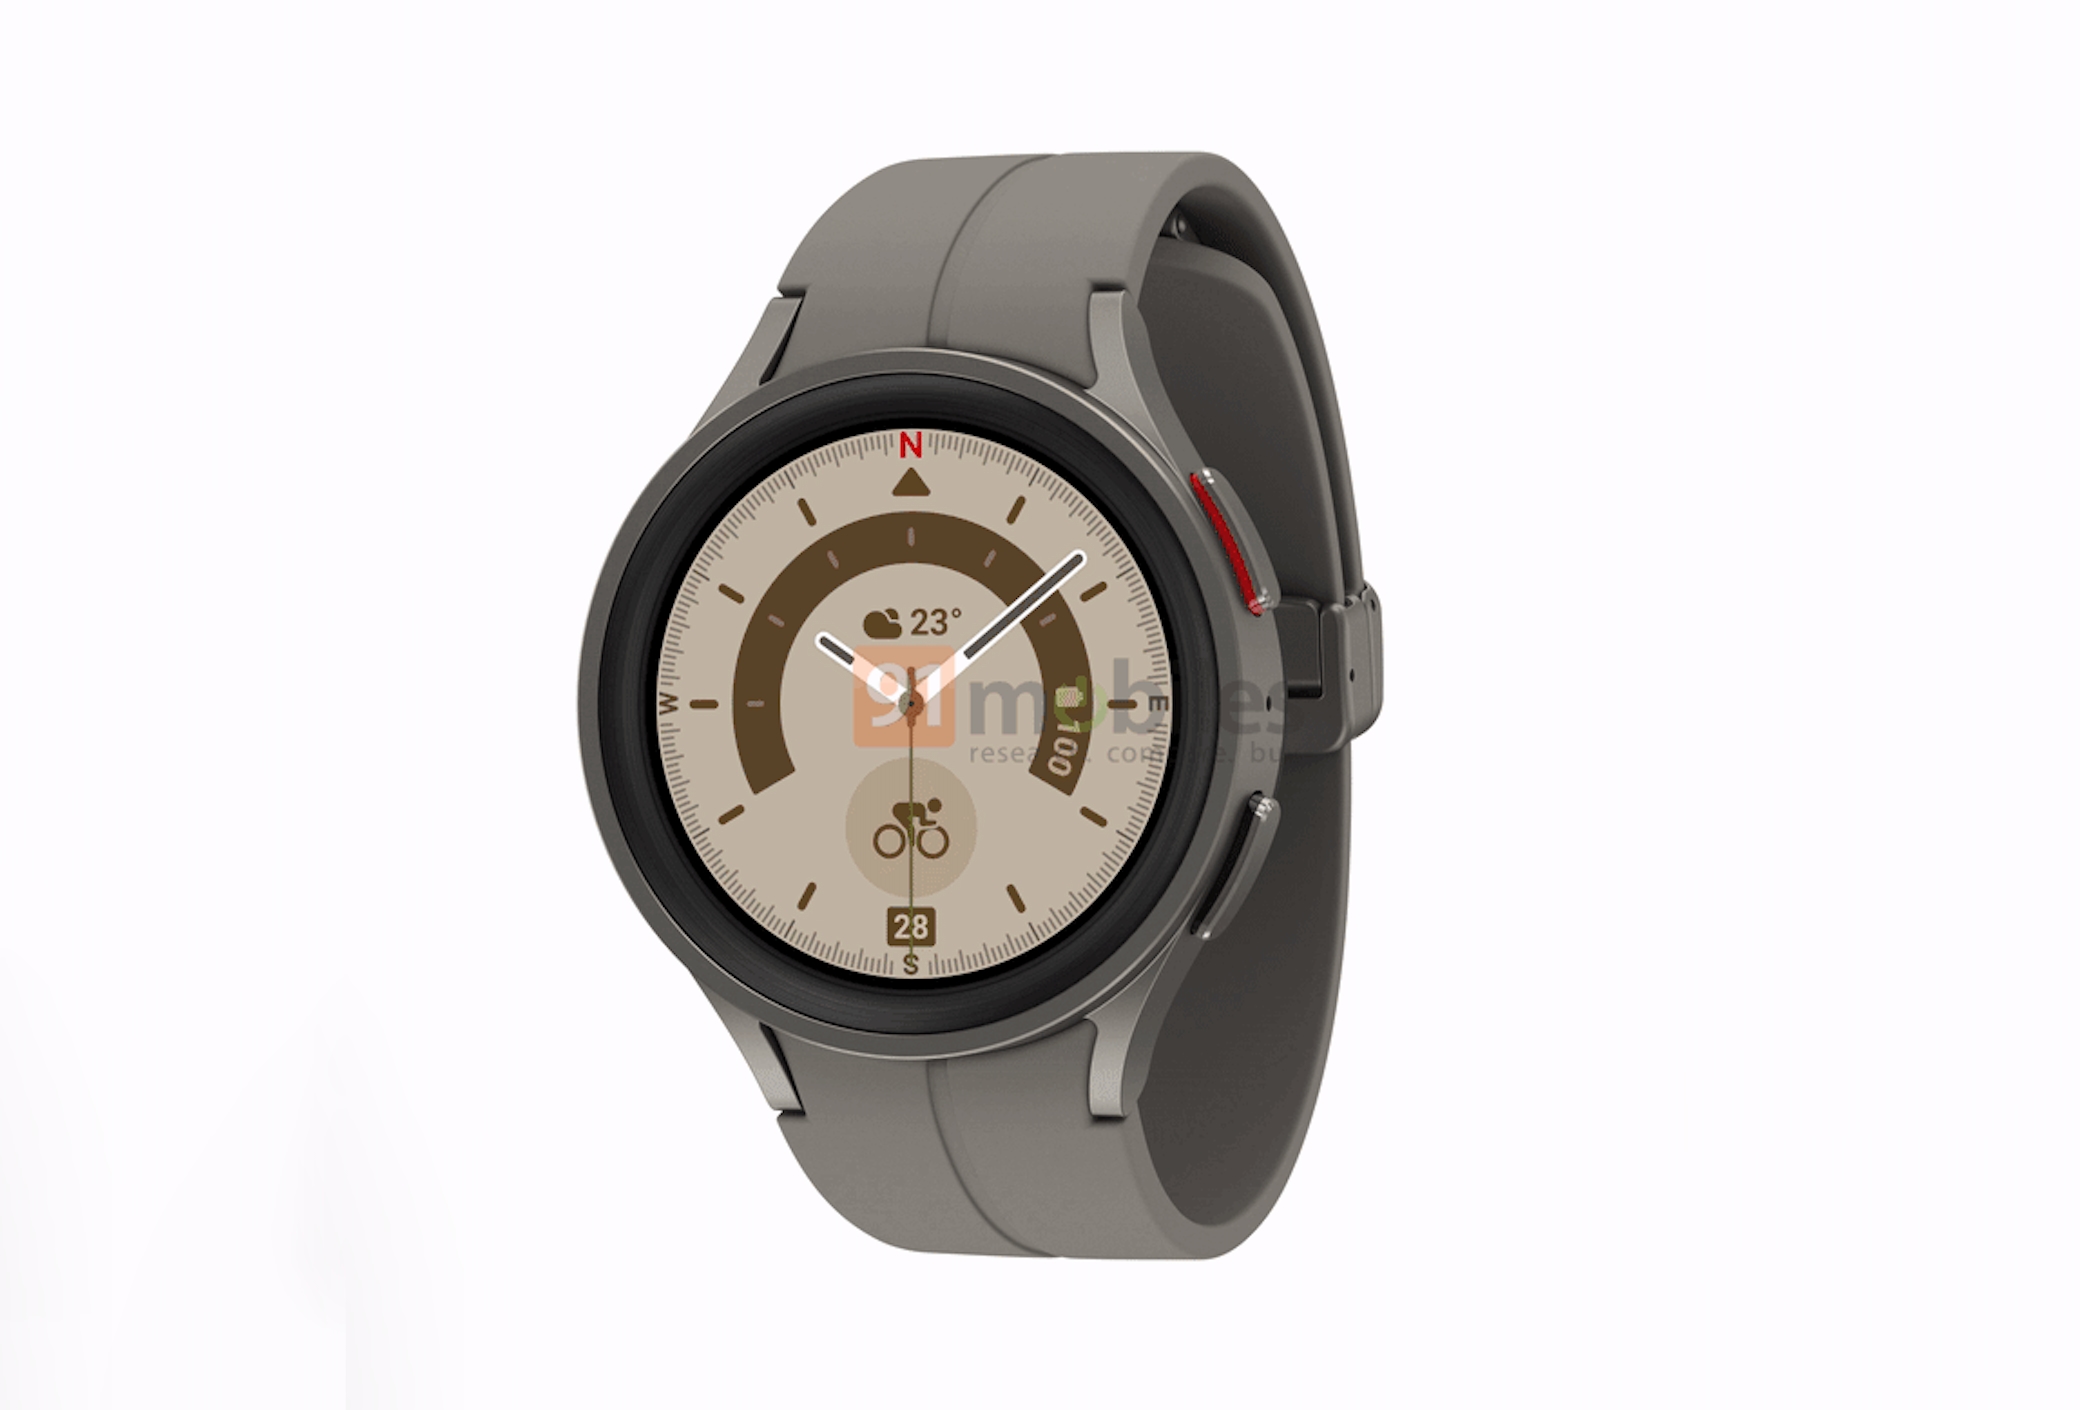 Como el Galaxy Watch 4 pero sin el bisel giratorio: una persona con información privilegiada revela cómo será el smartwatch Galaxy Watch 5